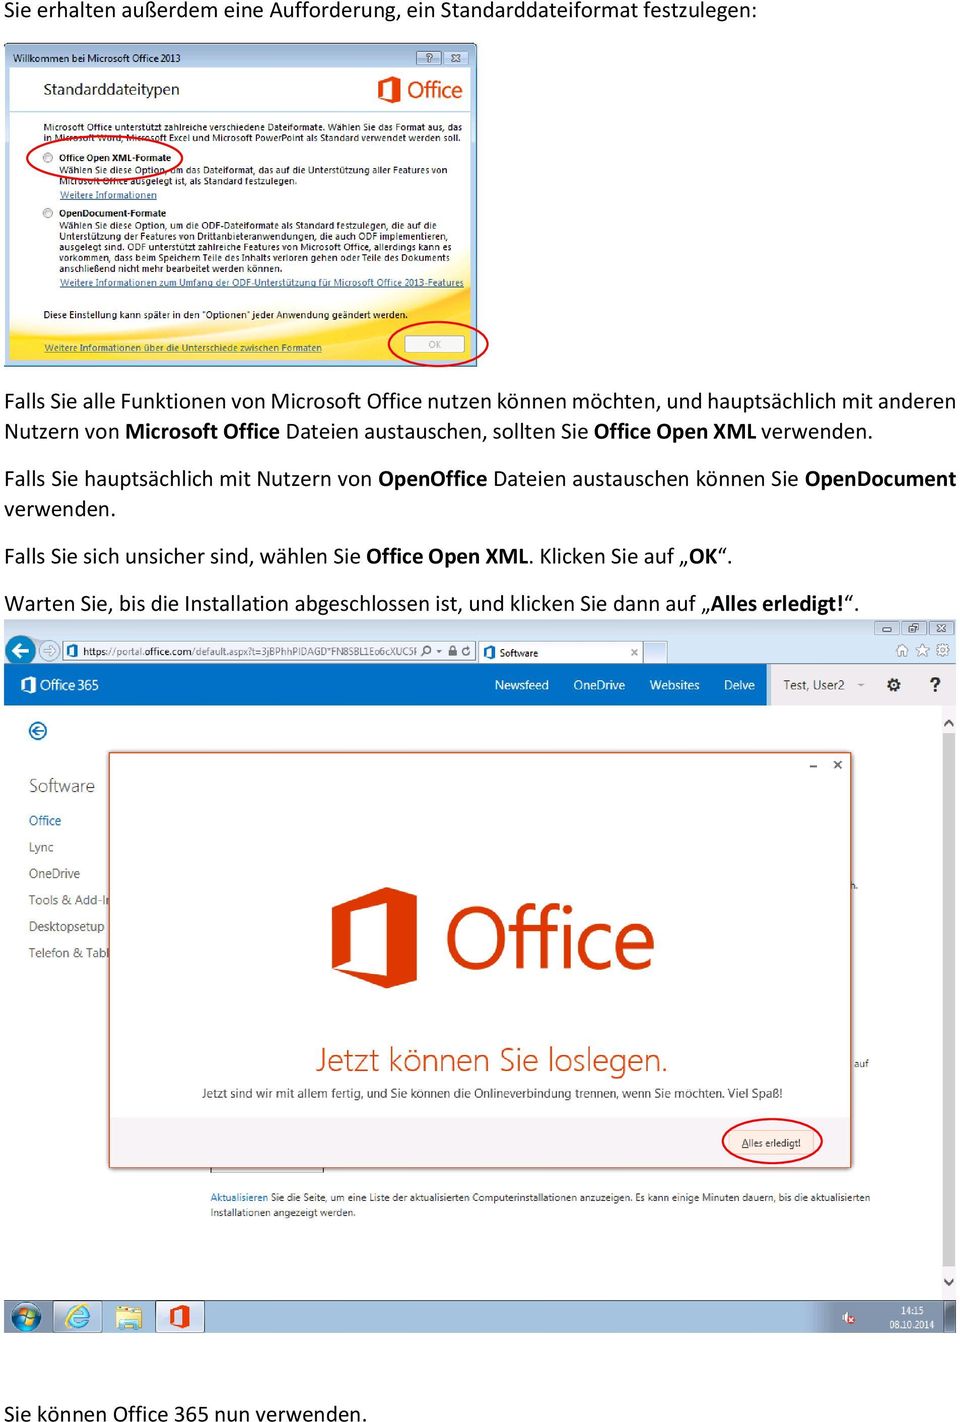 Falls Sie hauptsächlich mit Nutzern von OpenOffice Dateien austauschen können Sie OpenDocument verwenden.